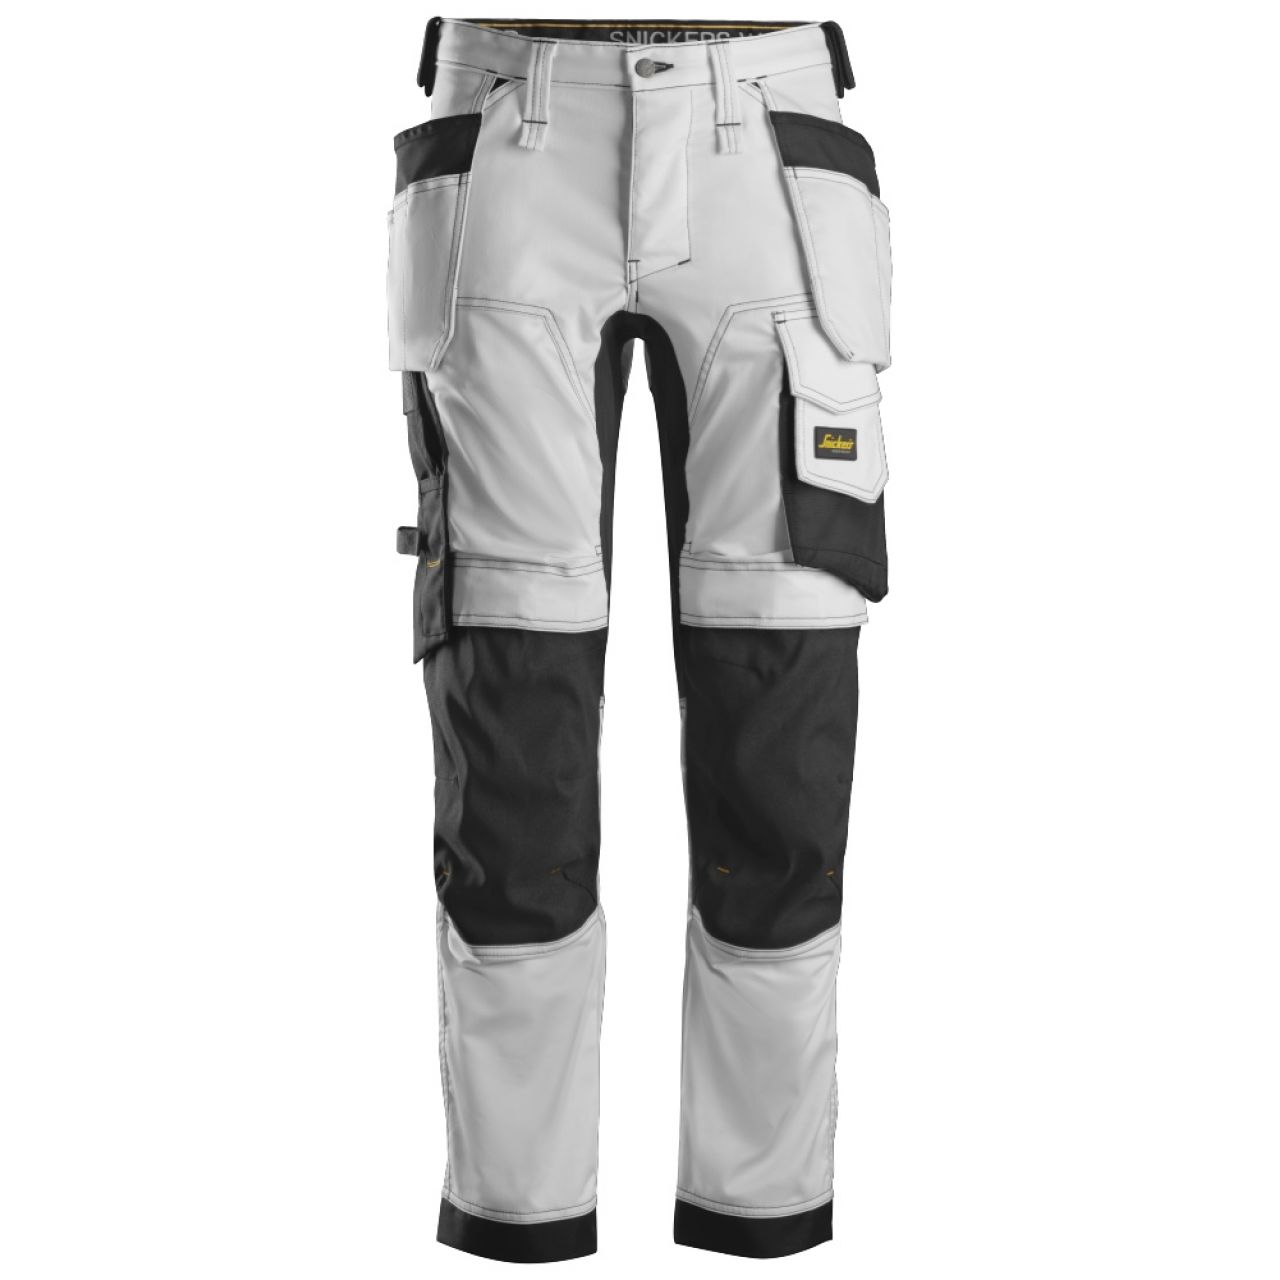 6241 Pantalones largos de trabajo elásticos con bolsillos flotantes AllroundWork blanco-negro talla 56